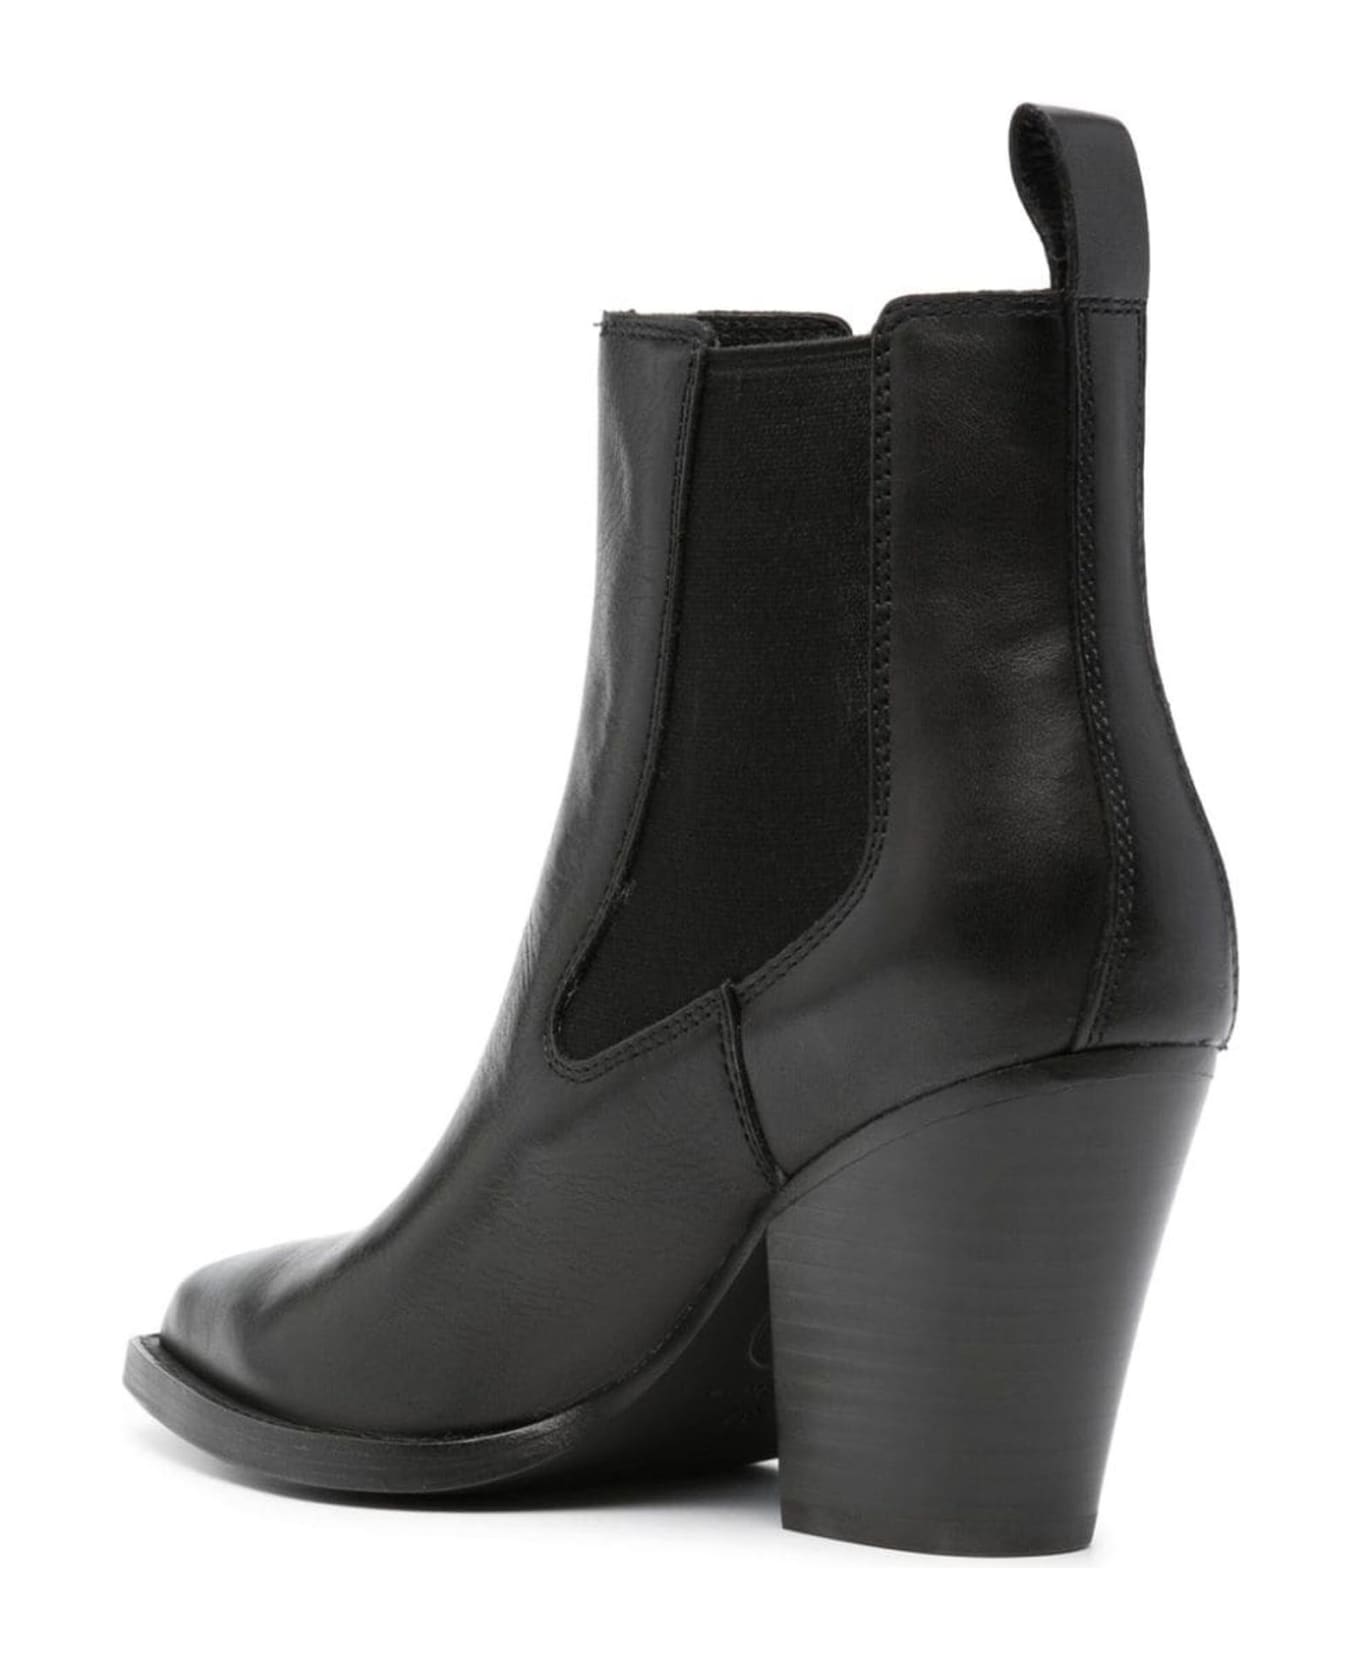 Ash Emi Black Leather Boots - Nero ブーツ